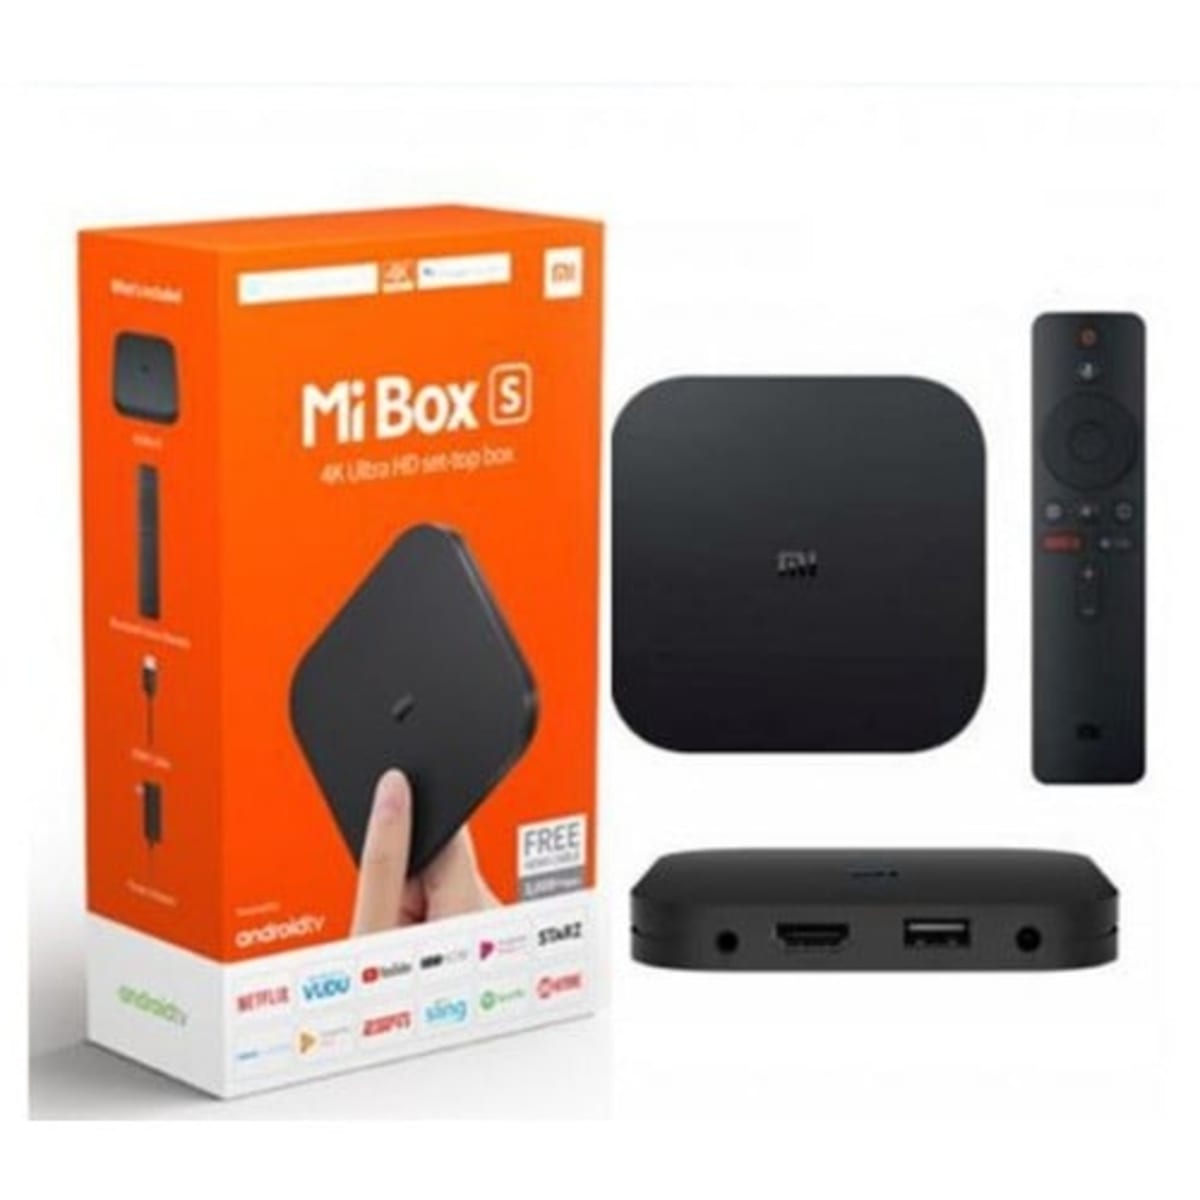 Xiaomi Mi Box S Media Player - MR Computer Services